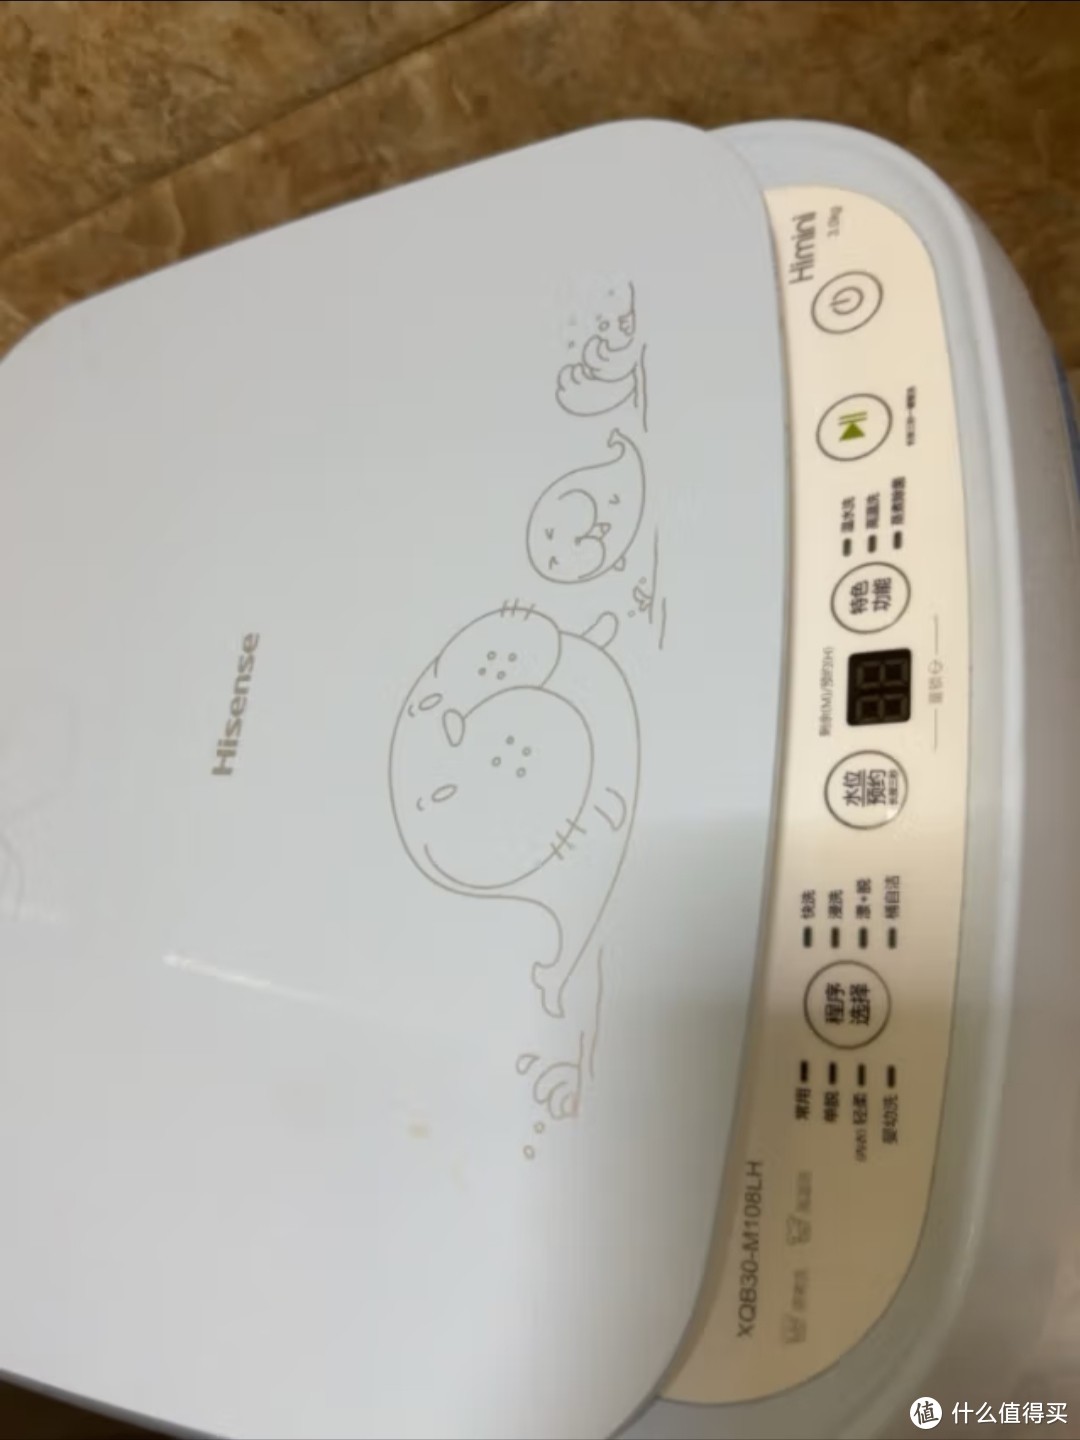 3公斤迷你洗衣机：高效洗涤，空间利用更优化